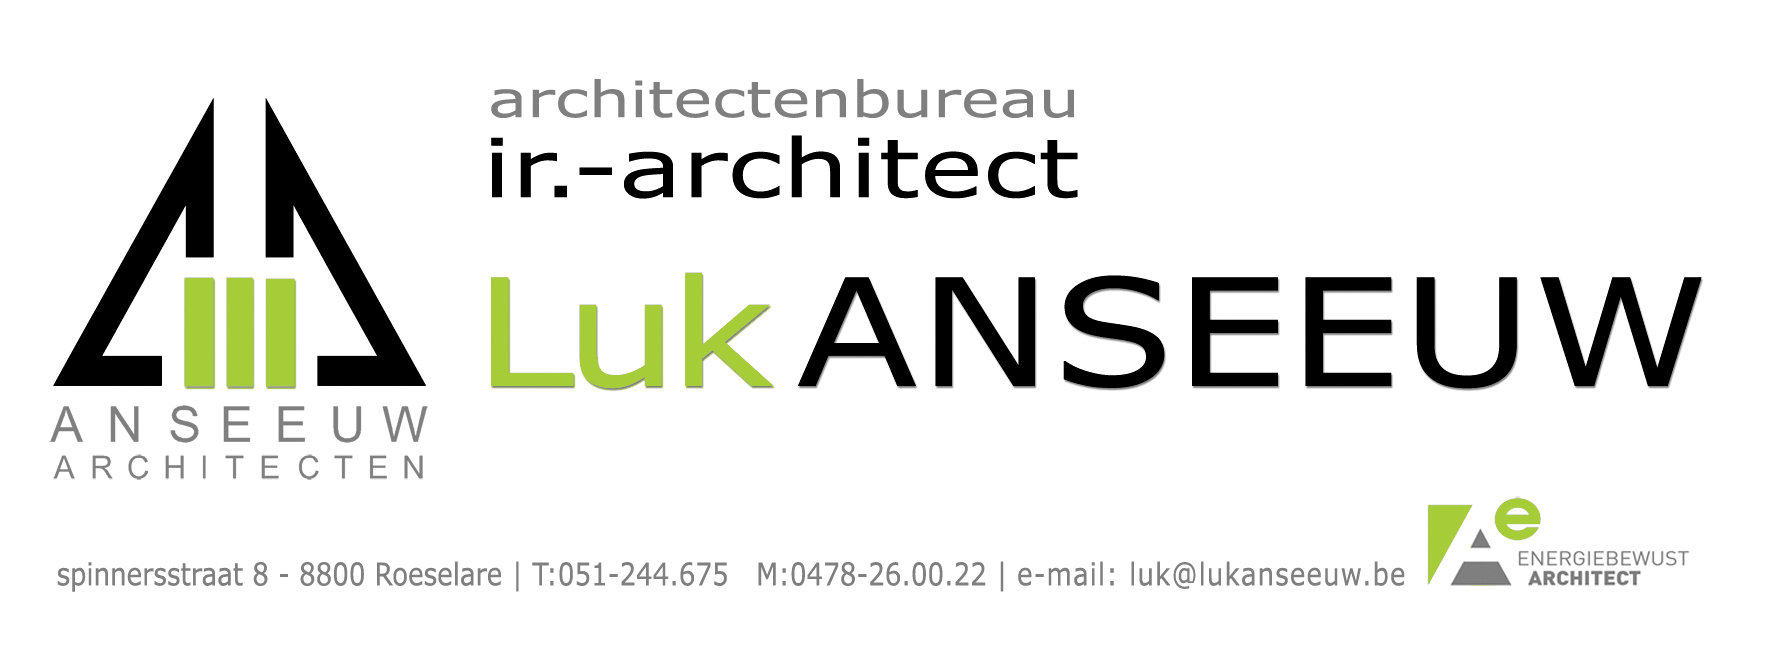 architectenbureau Luk Anseeuw-kleur.jpg